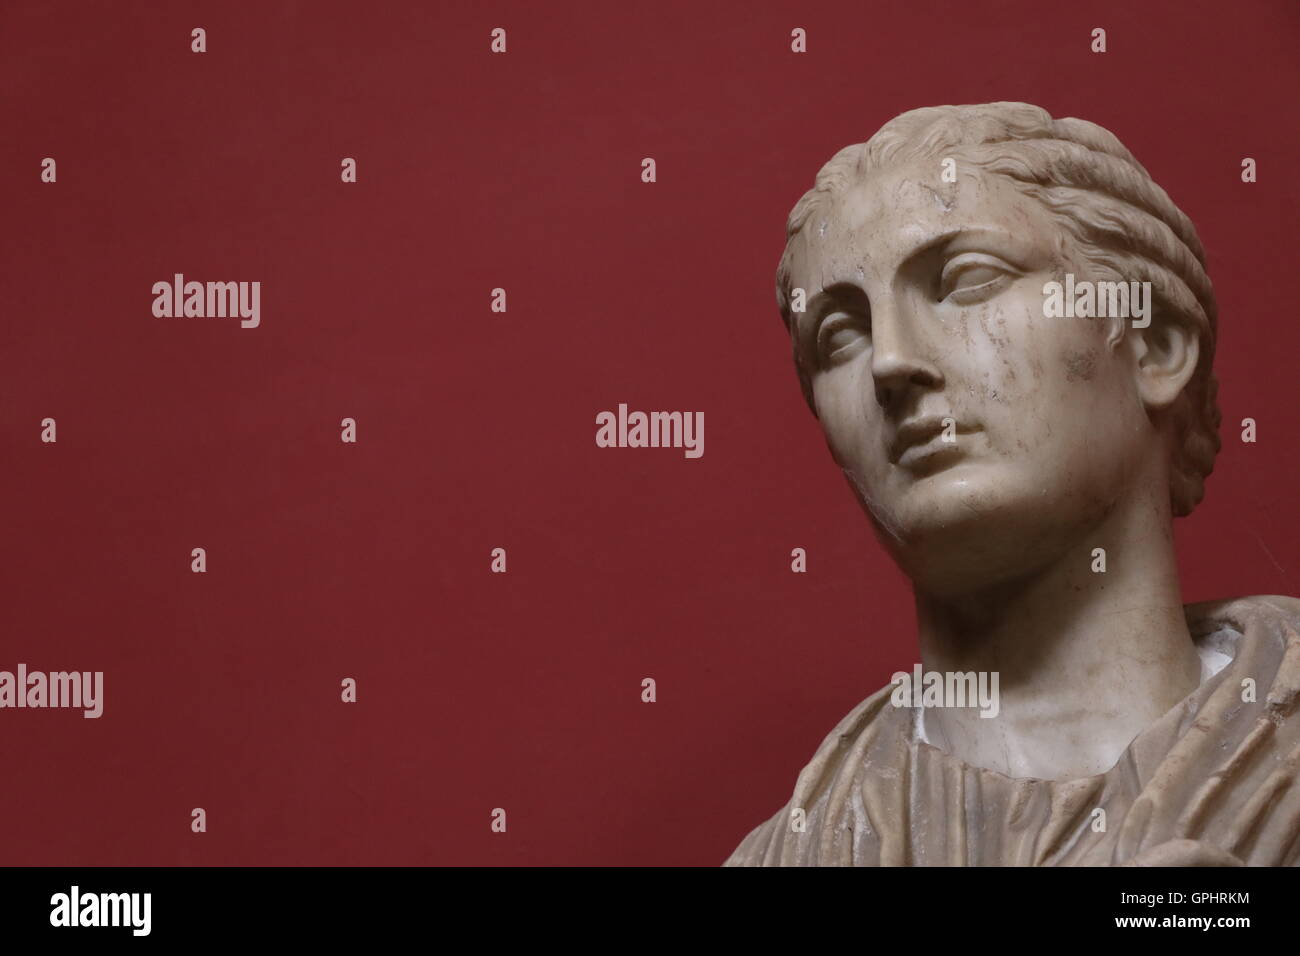 Antica statua dei musei vaticani Foto Stock